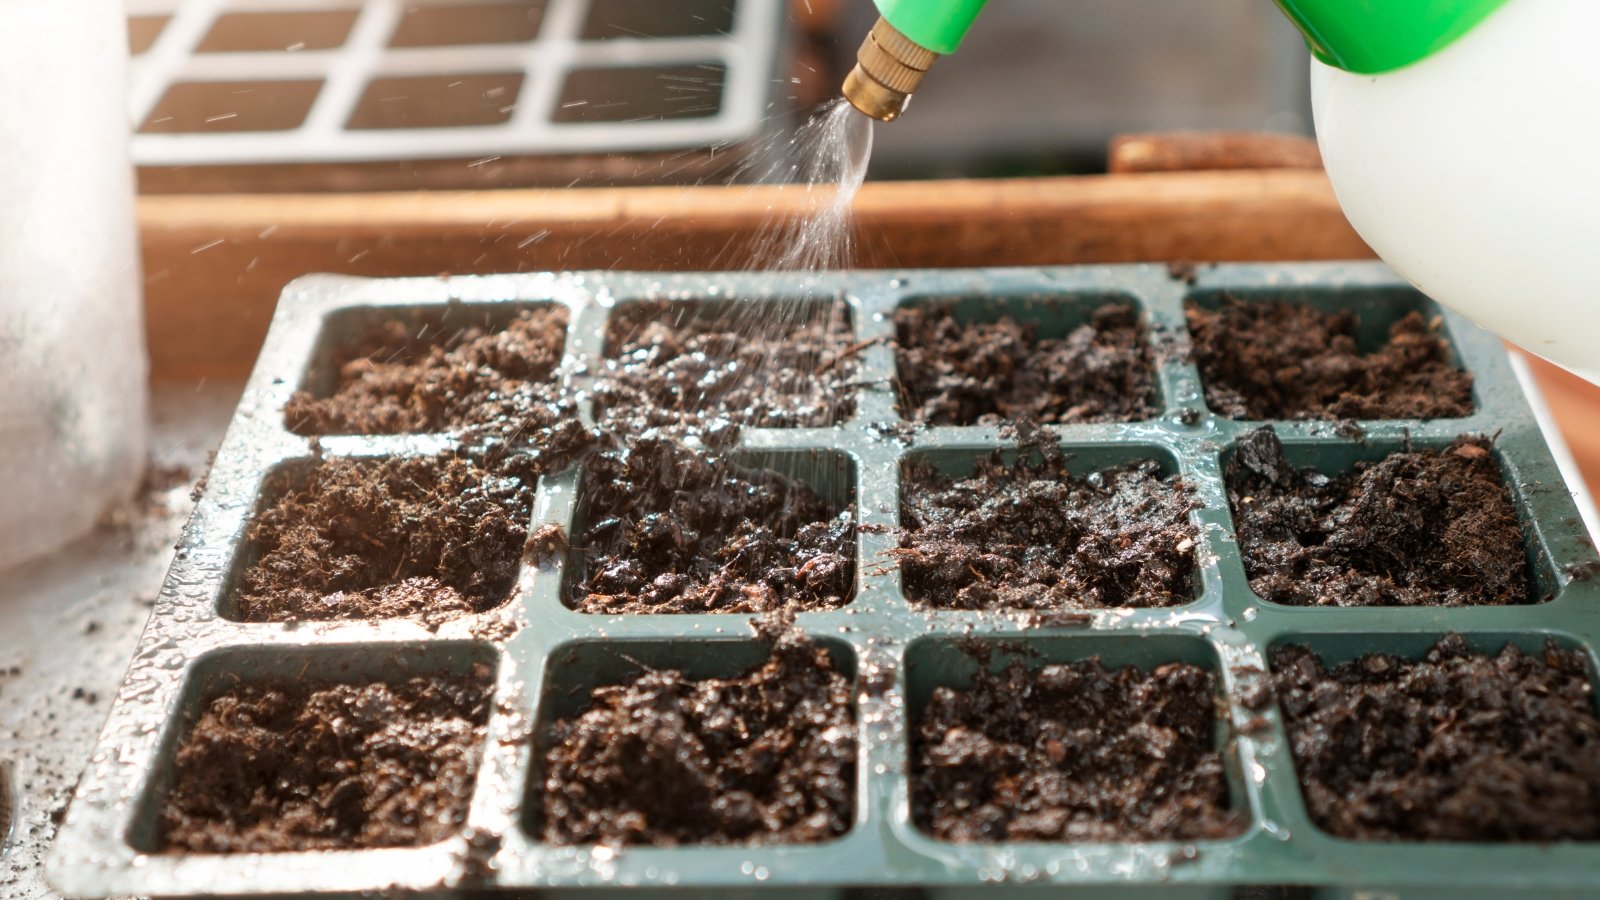 Gardener making mistake of overwatering seed trays during seeding season